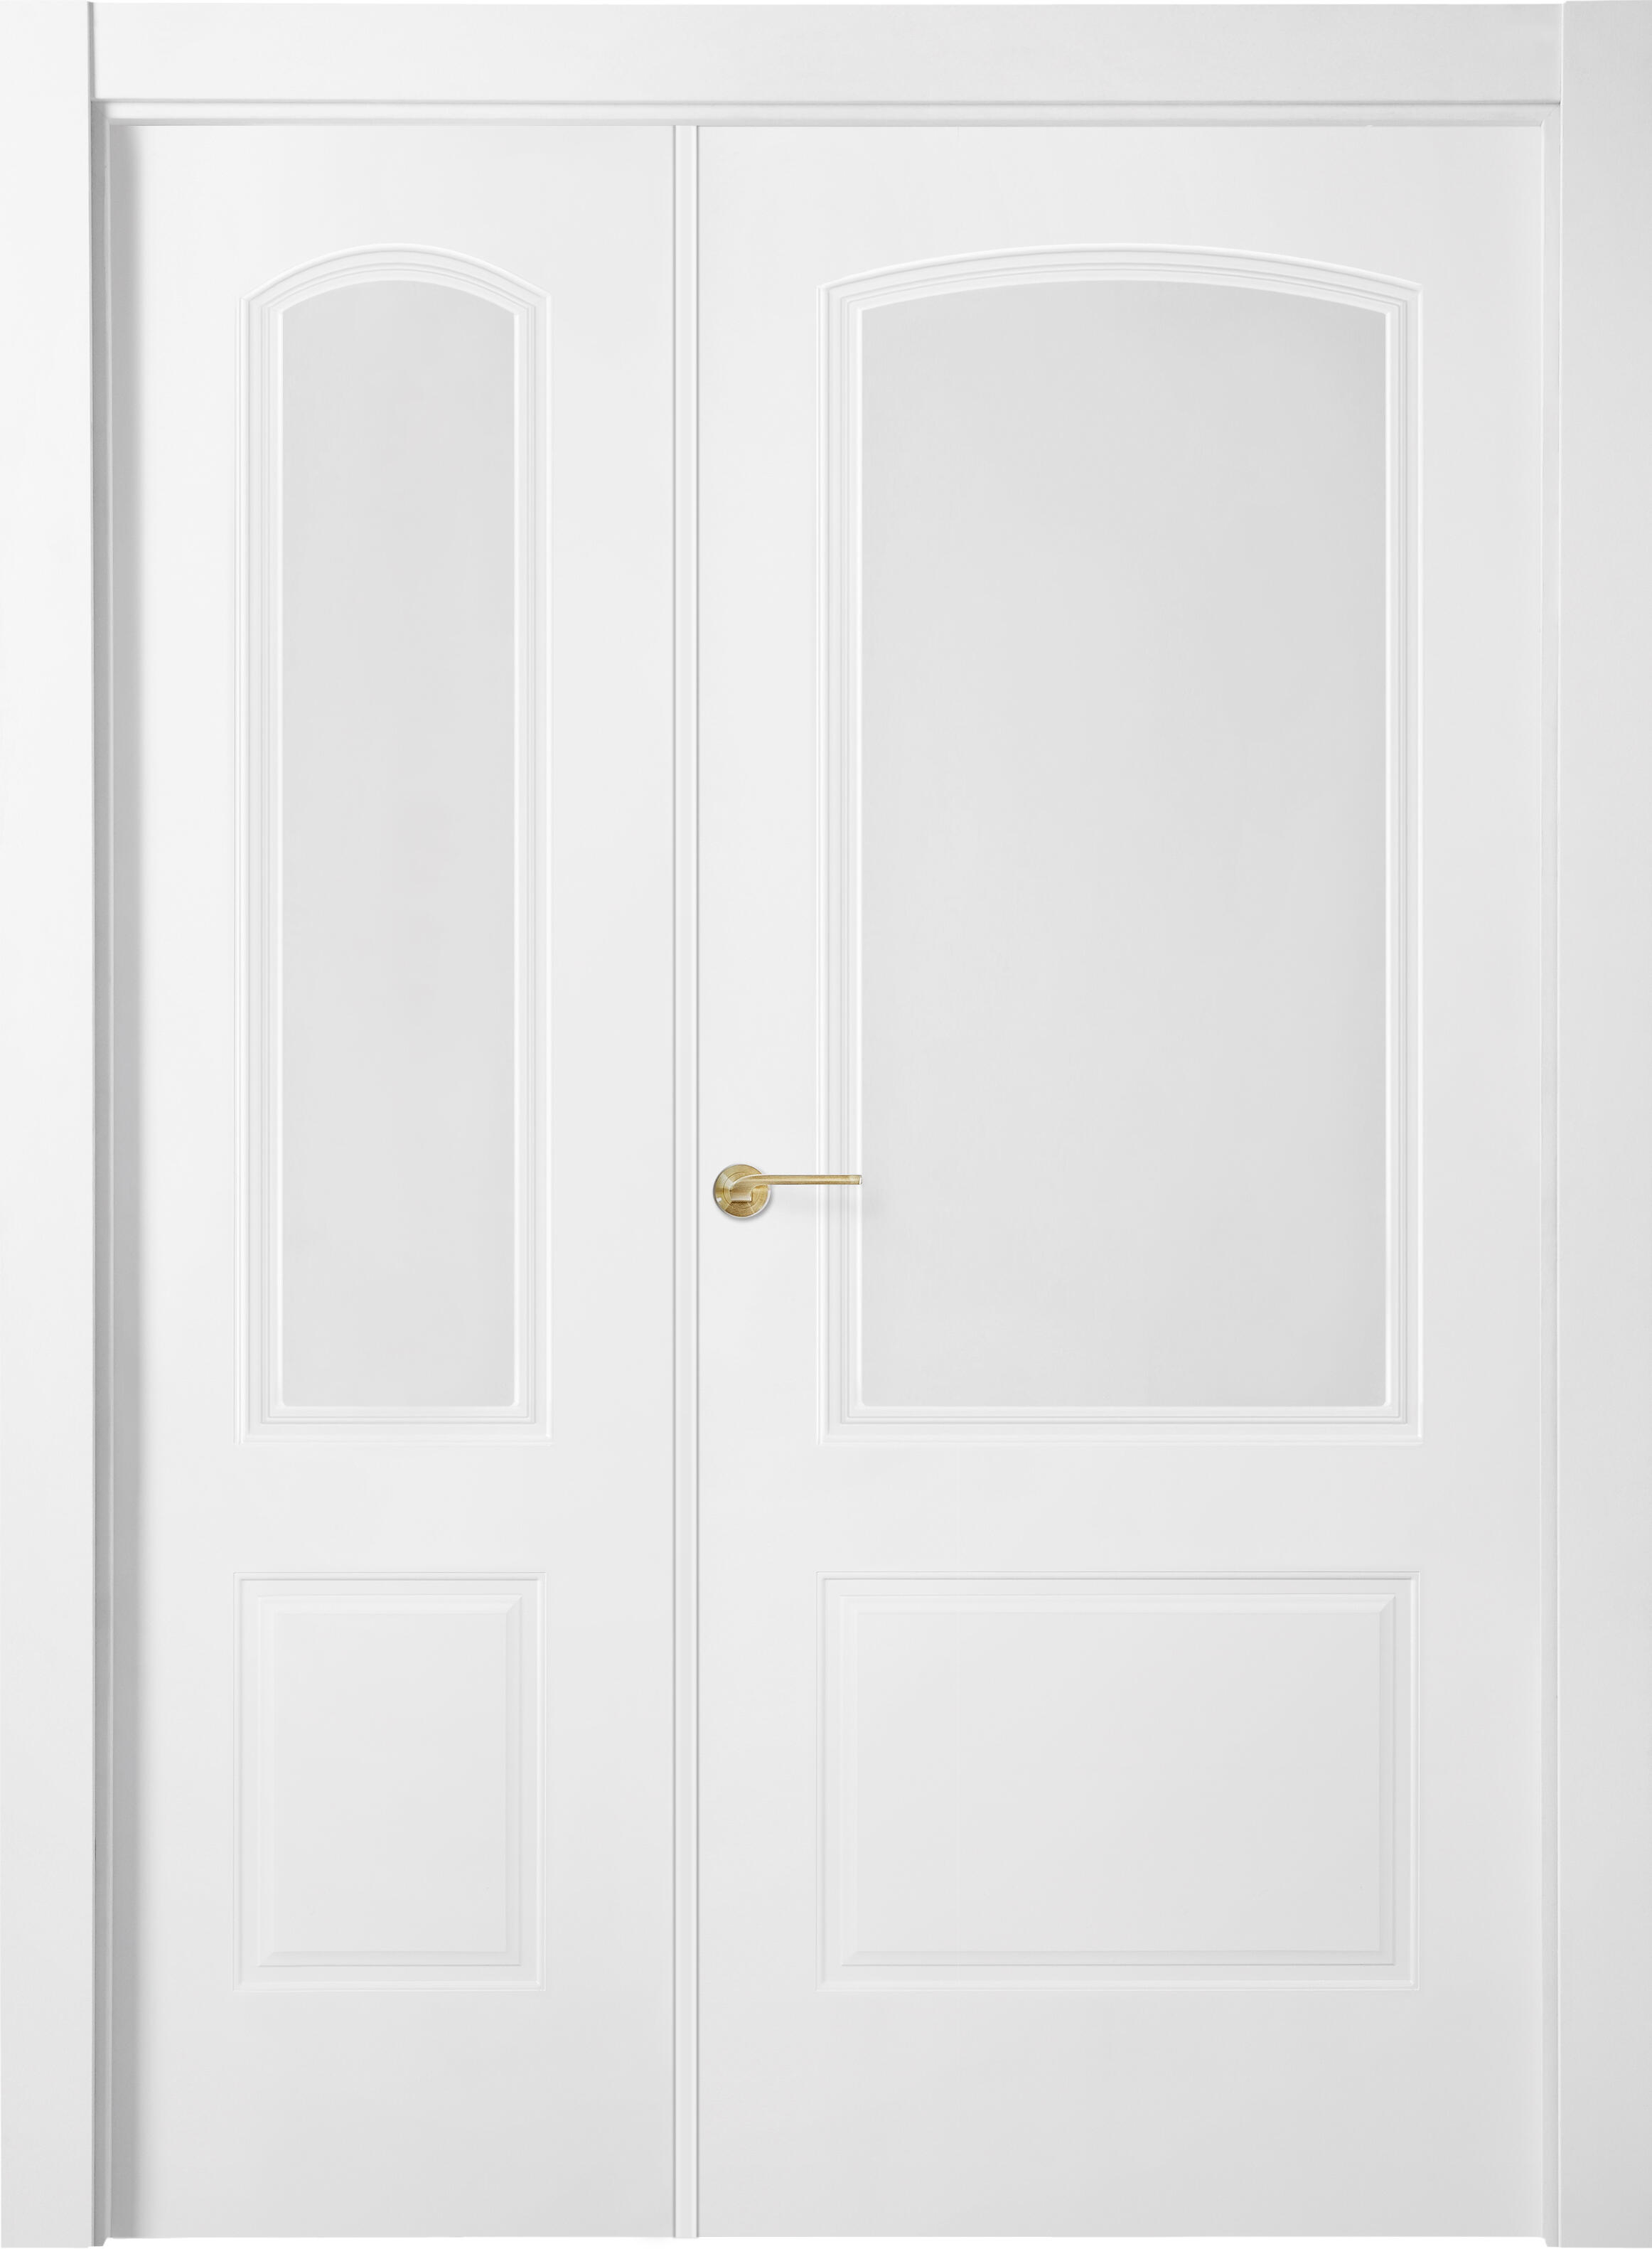 Puerta berlin plus blanco apertura derecha con cristal 9x125cm